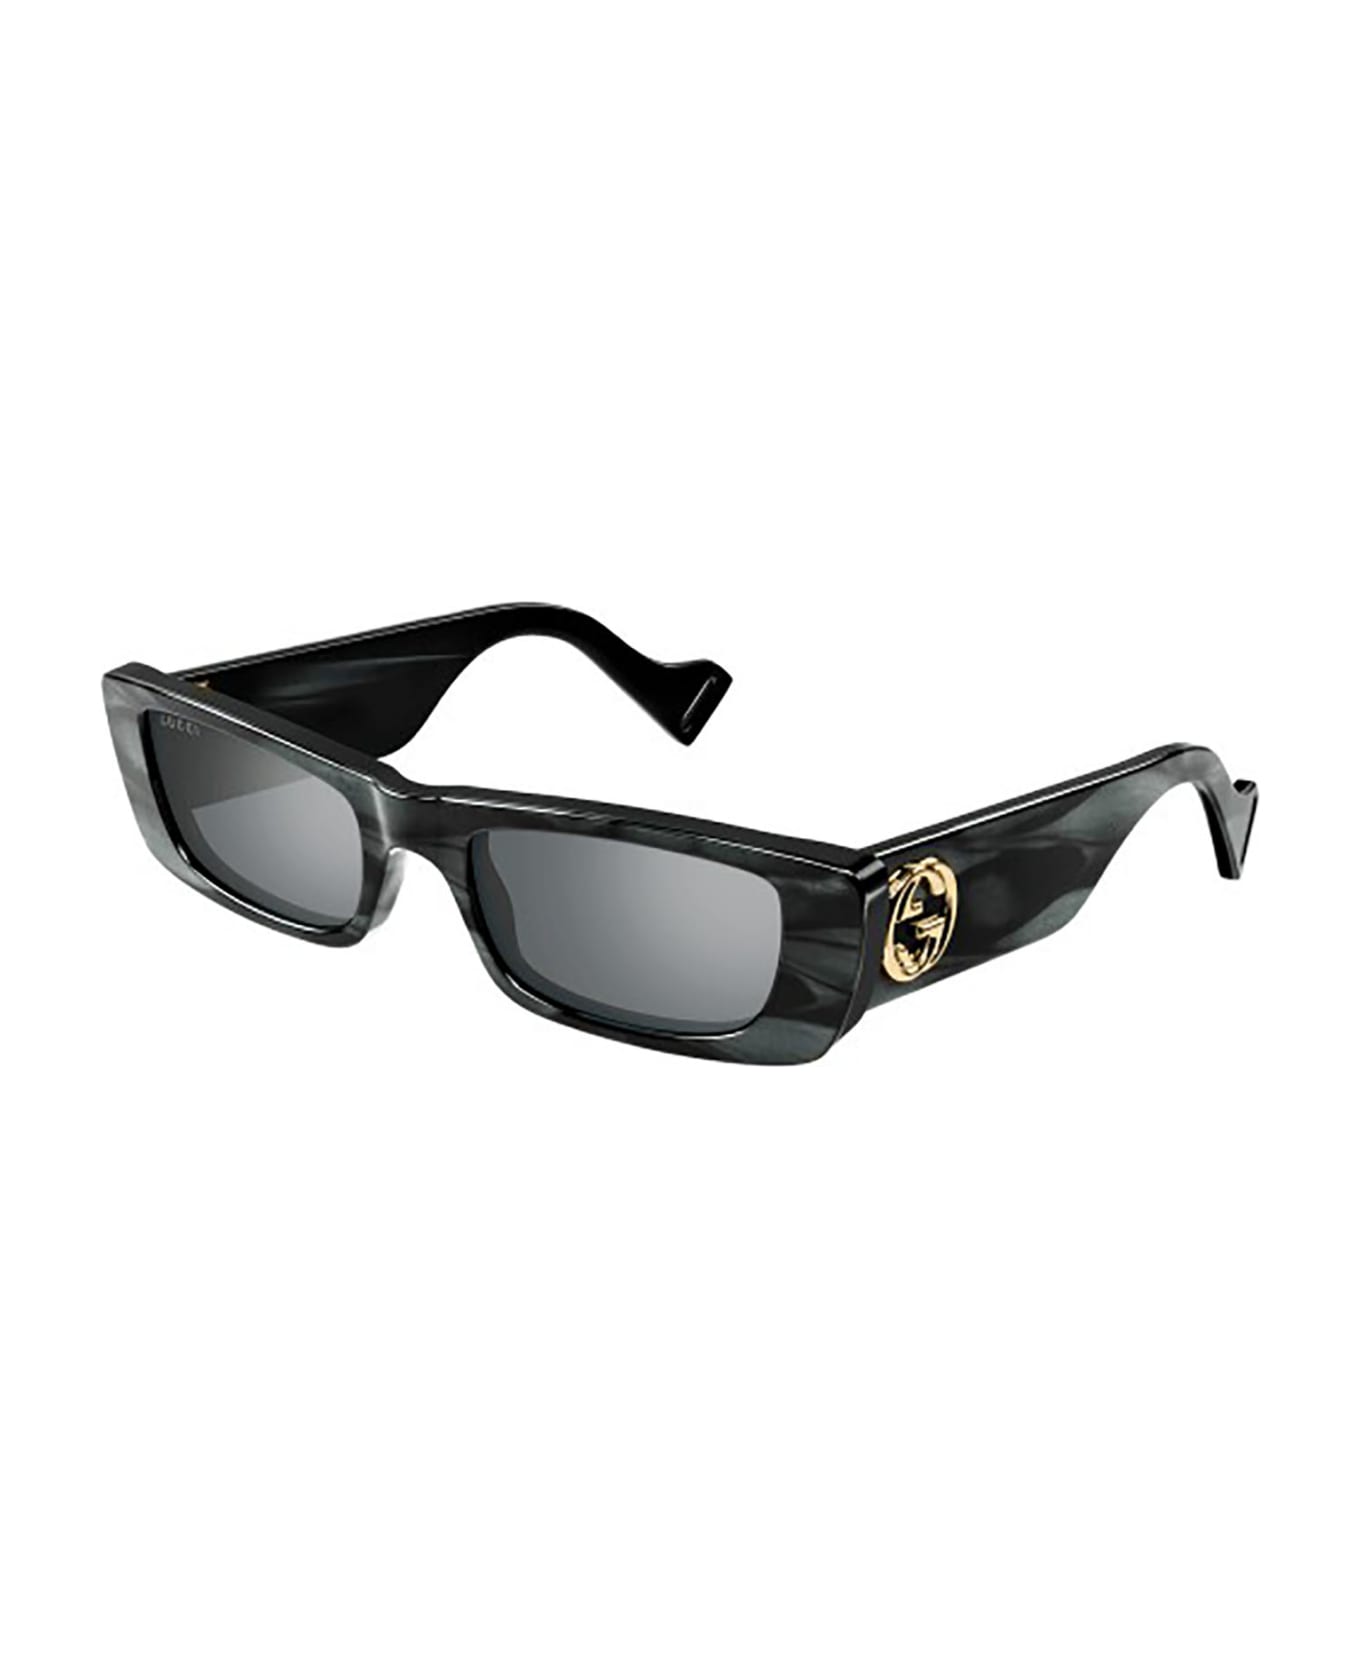 Gucci Eyewear Gg0516s Sunglasses - 013 grey grey silver